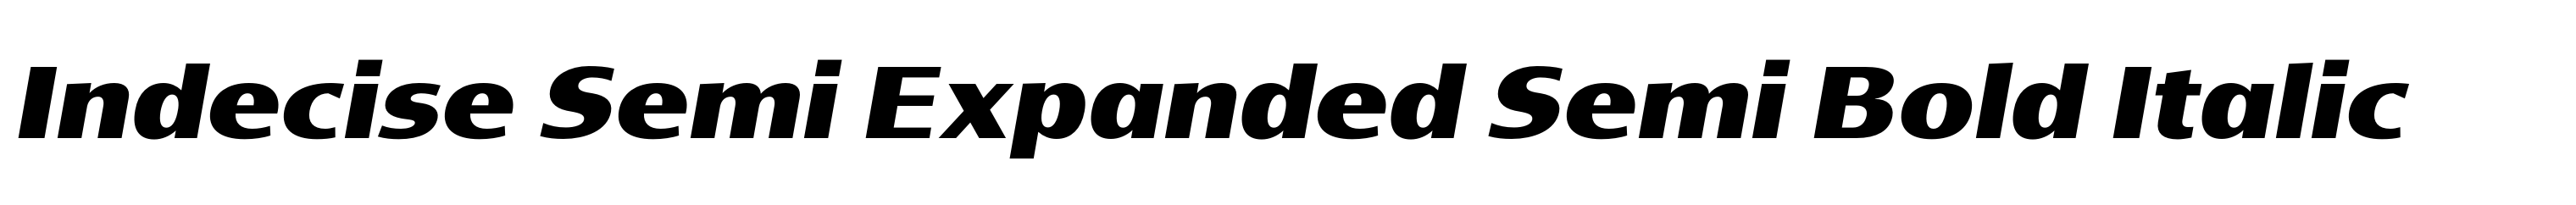 Indecise Semi Expanded Semi Bold Italic